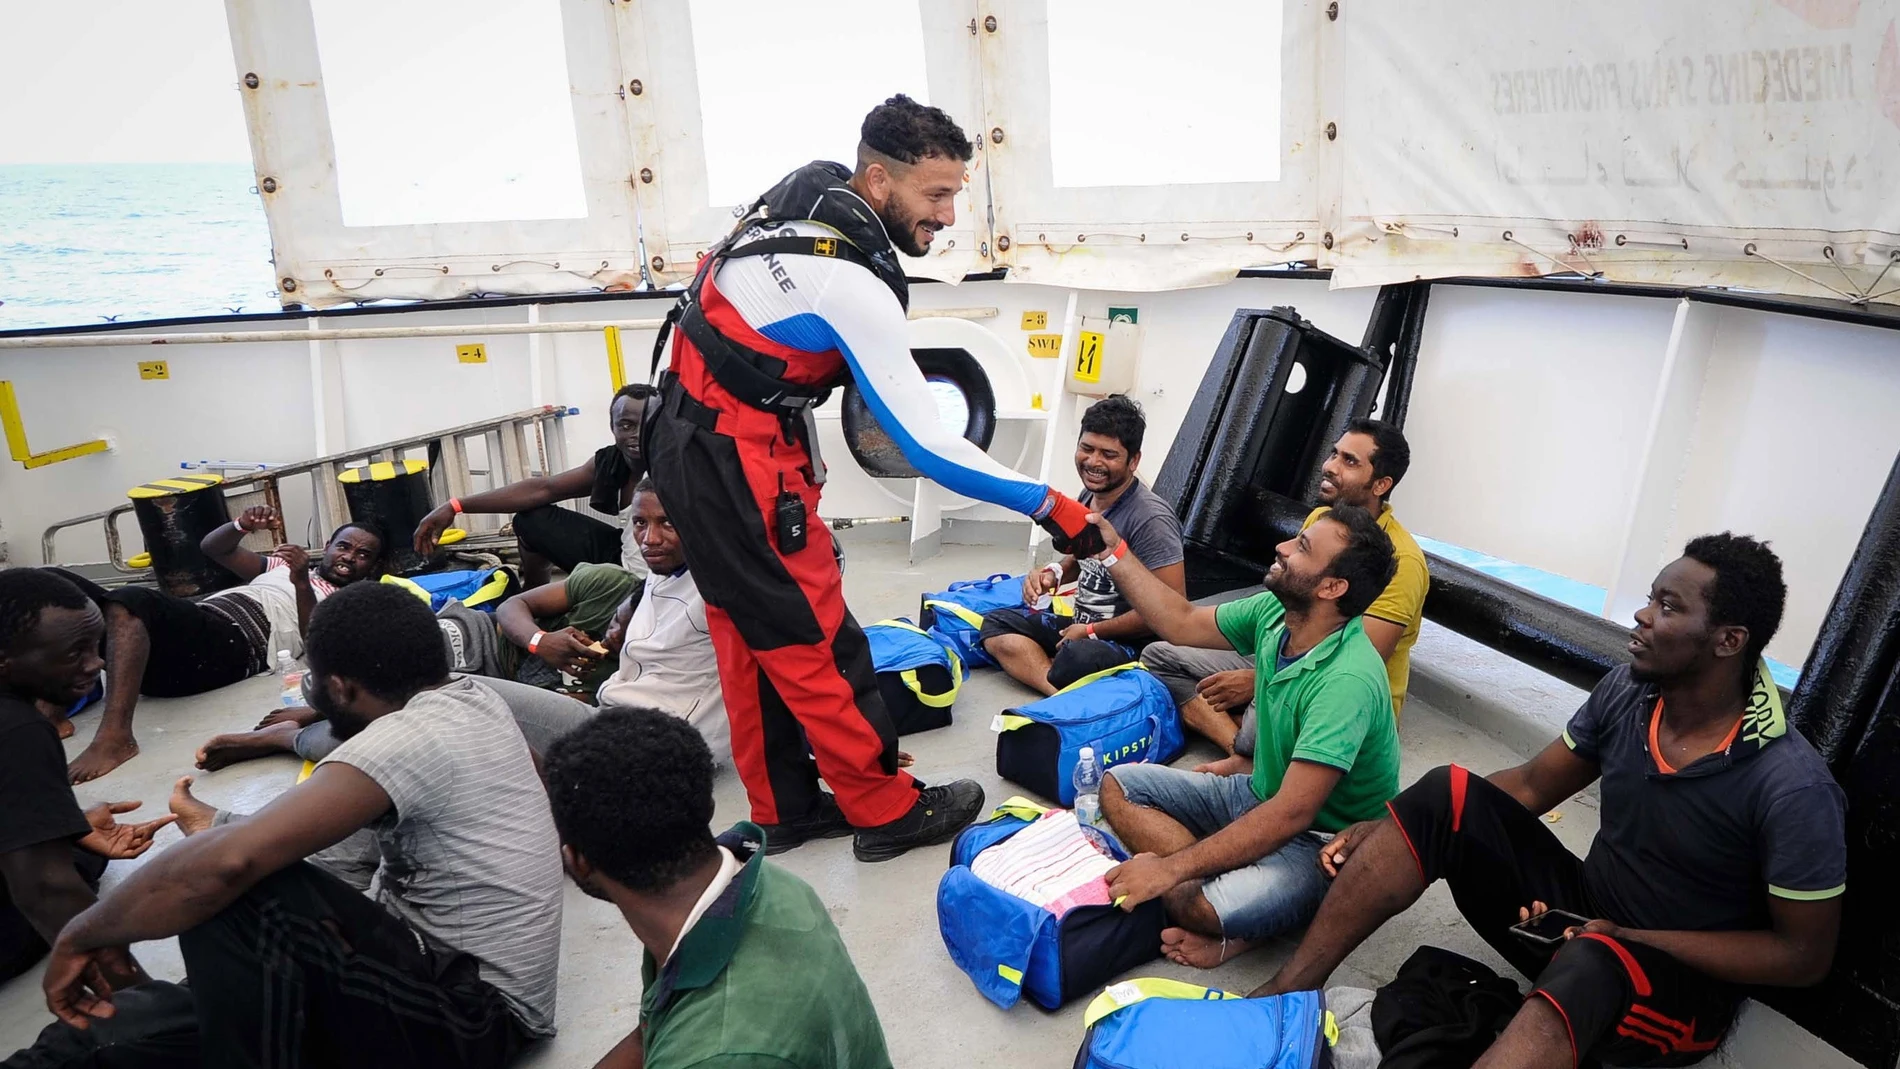 Varios inmigrantes rescatados abordo del barco de rescate Aquarius 